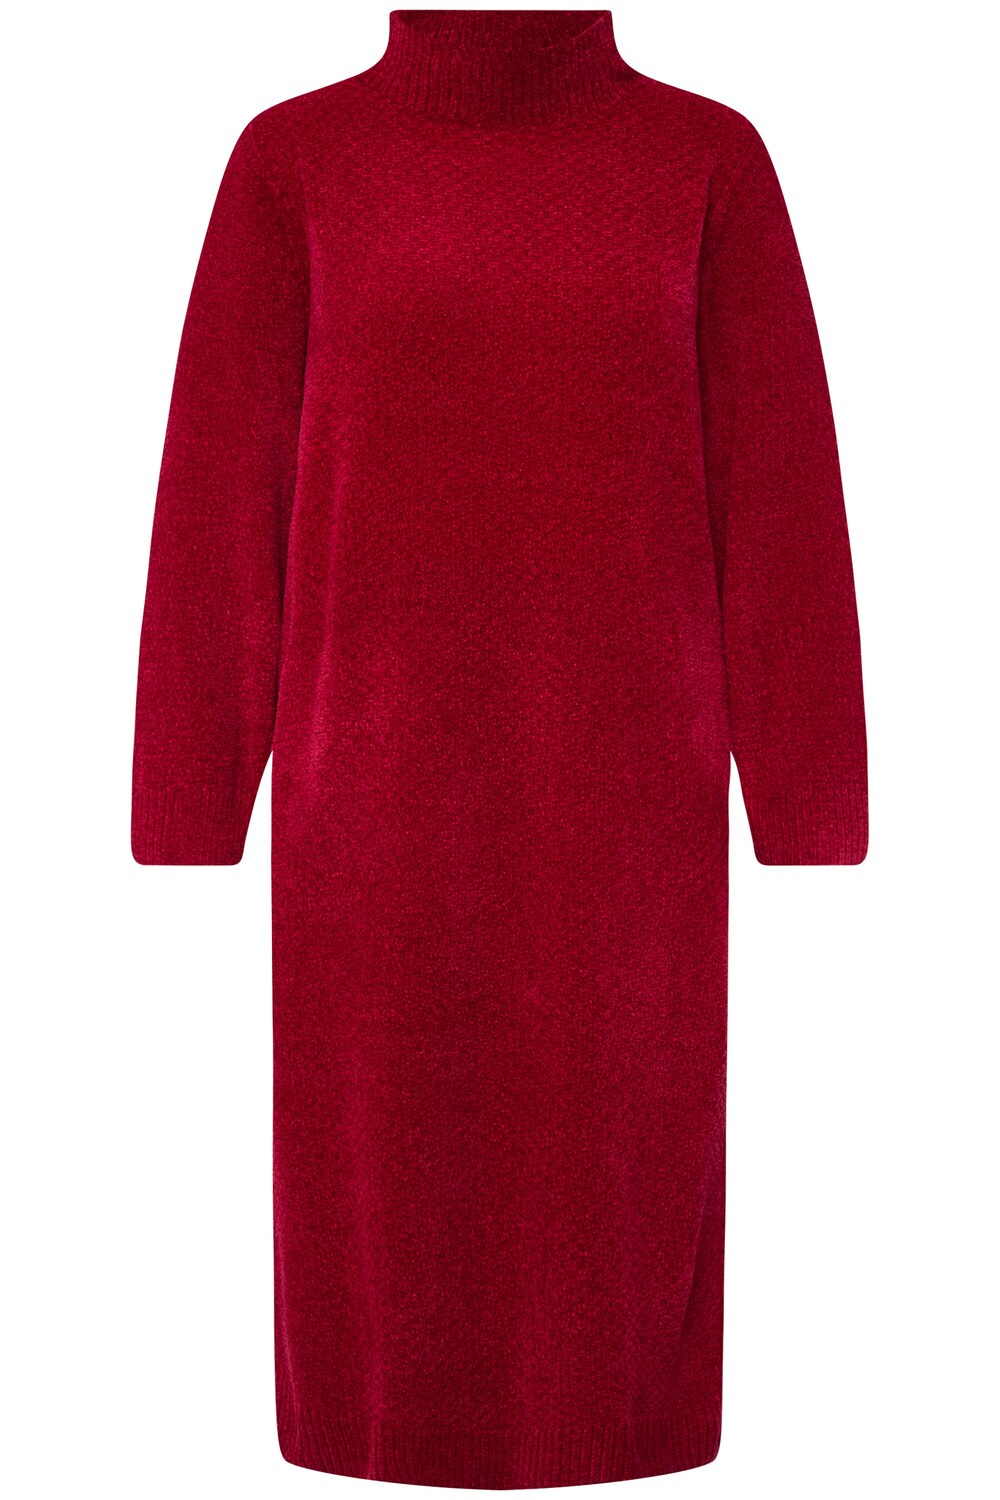 Вязанное платье Ulla Popken, красный